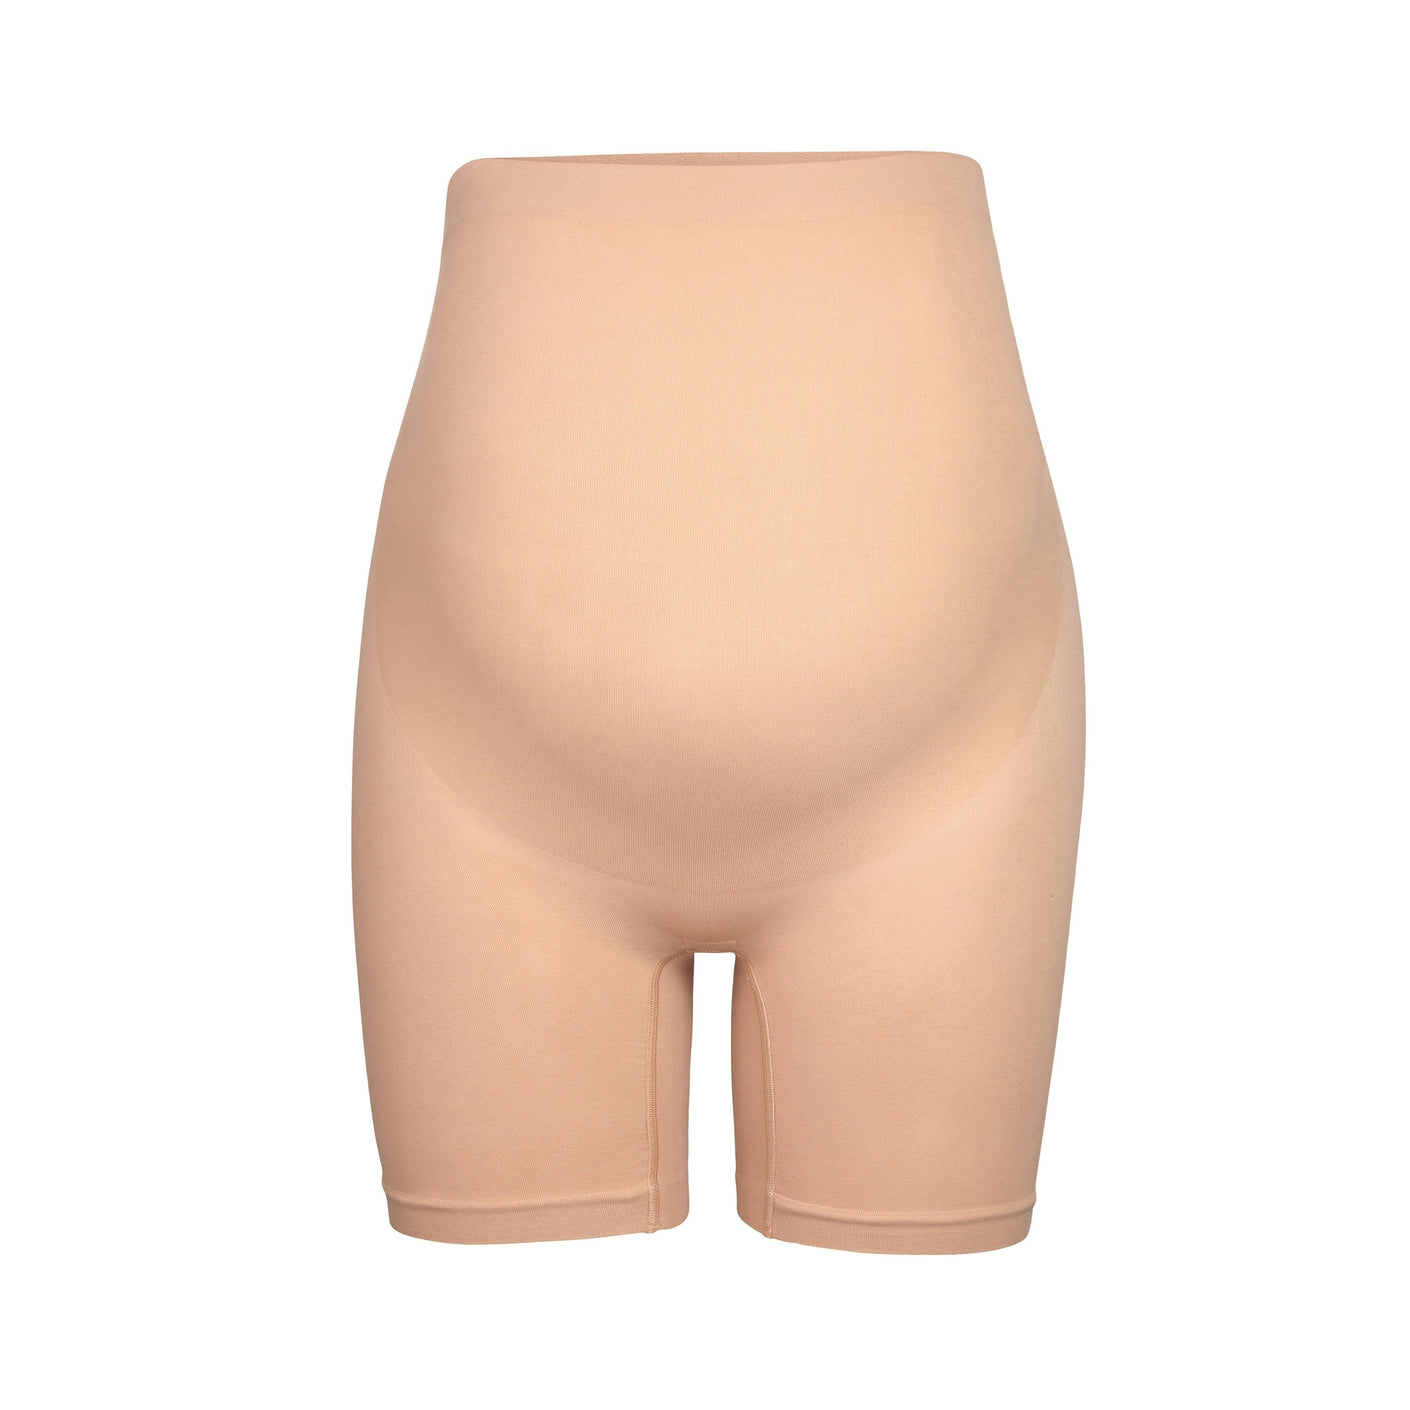 NIB NEW Kim K SKIMS Maternity Solutionwear Tights Size S/M Sand SH